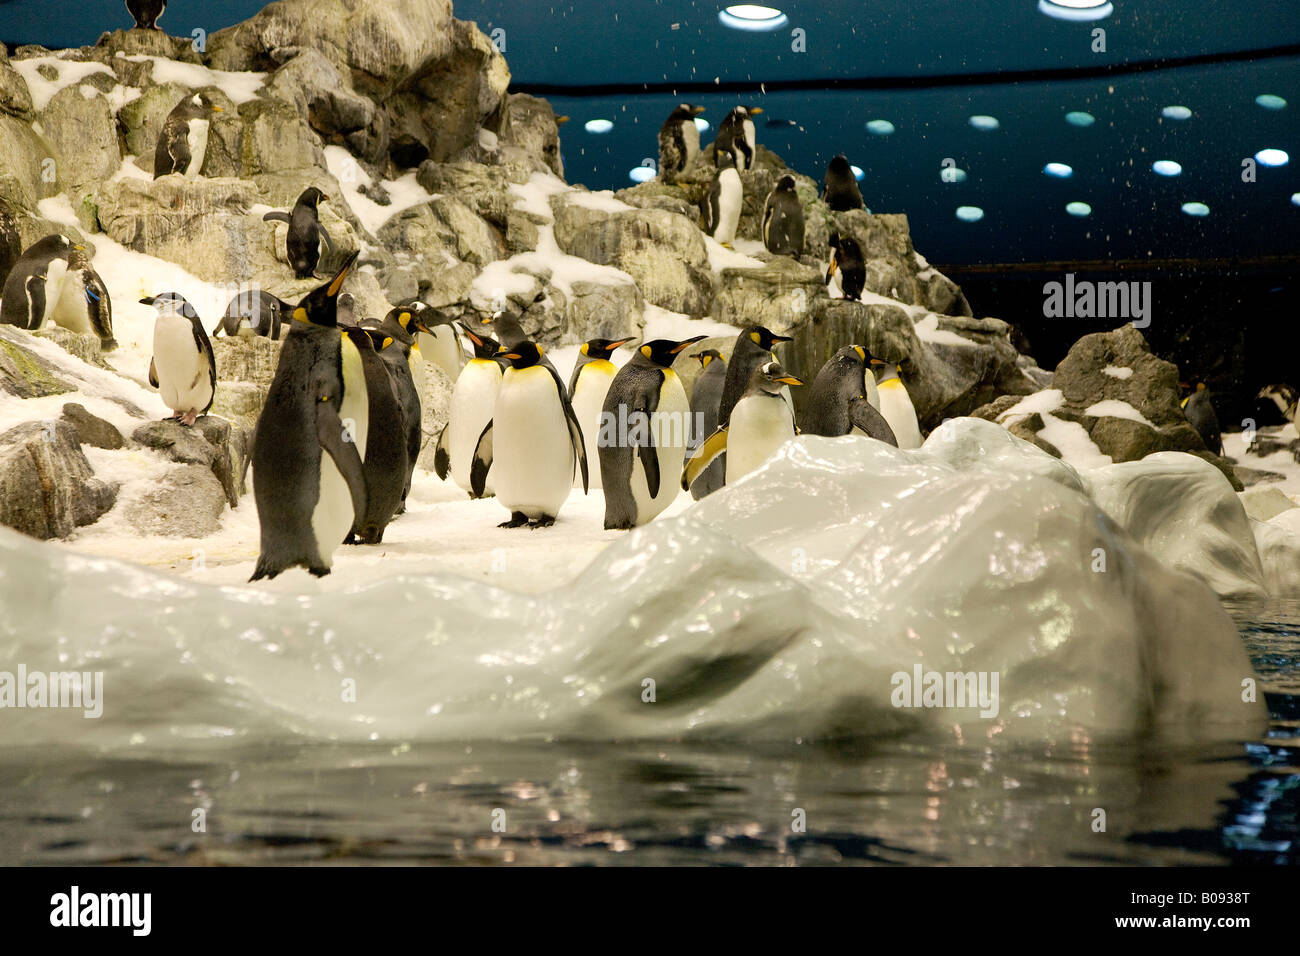 Emperor Penguins (Aptenodytes patagonicus) at the Planet Penguin Aquarium, Loro Parque, Tenerife, Canary Islands, Spain Stock Photo